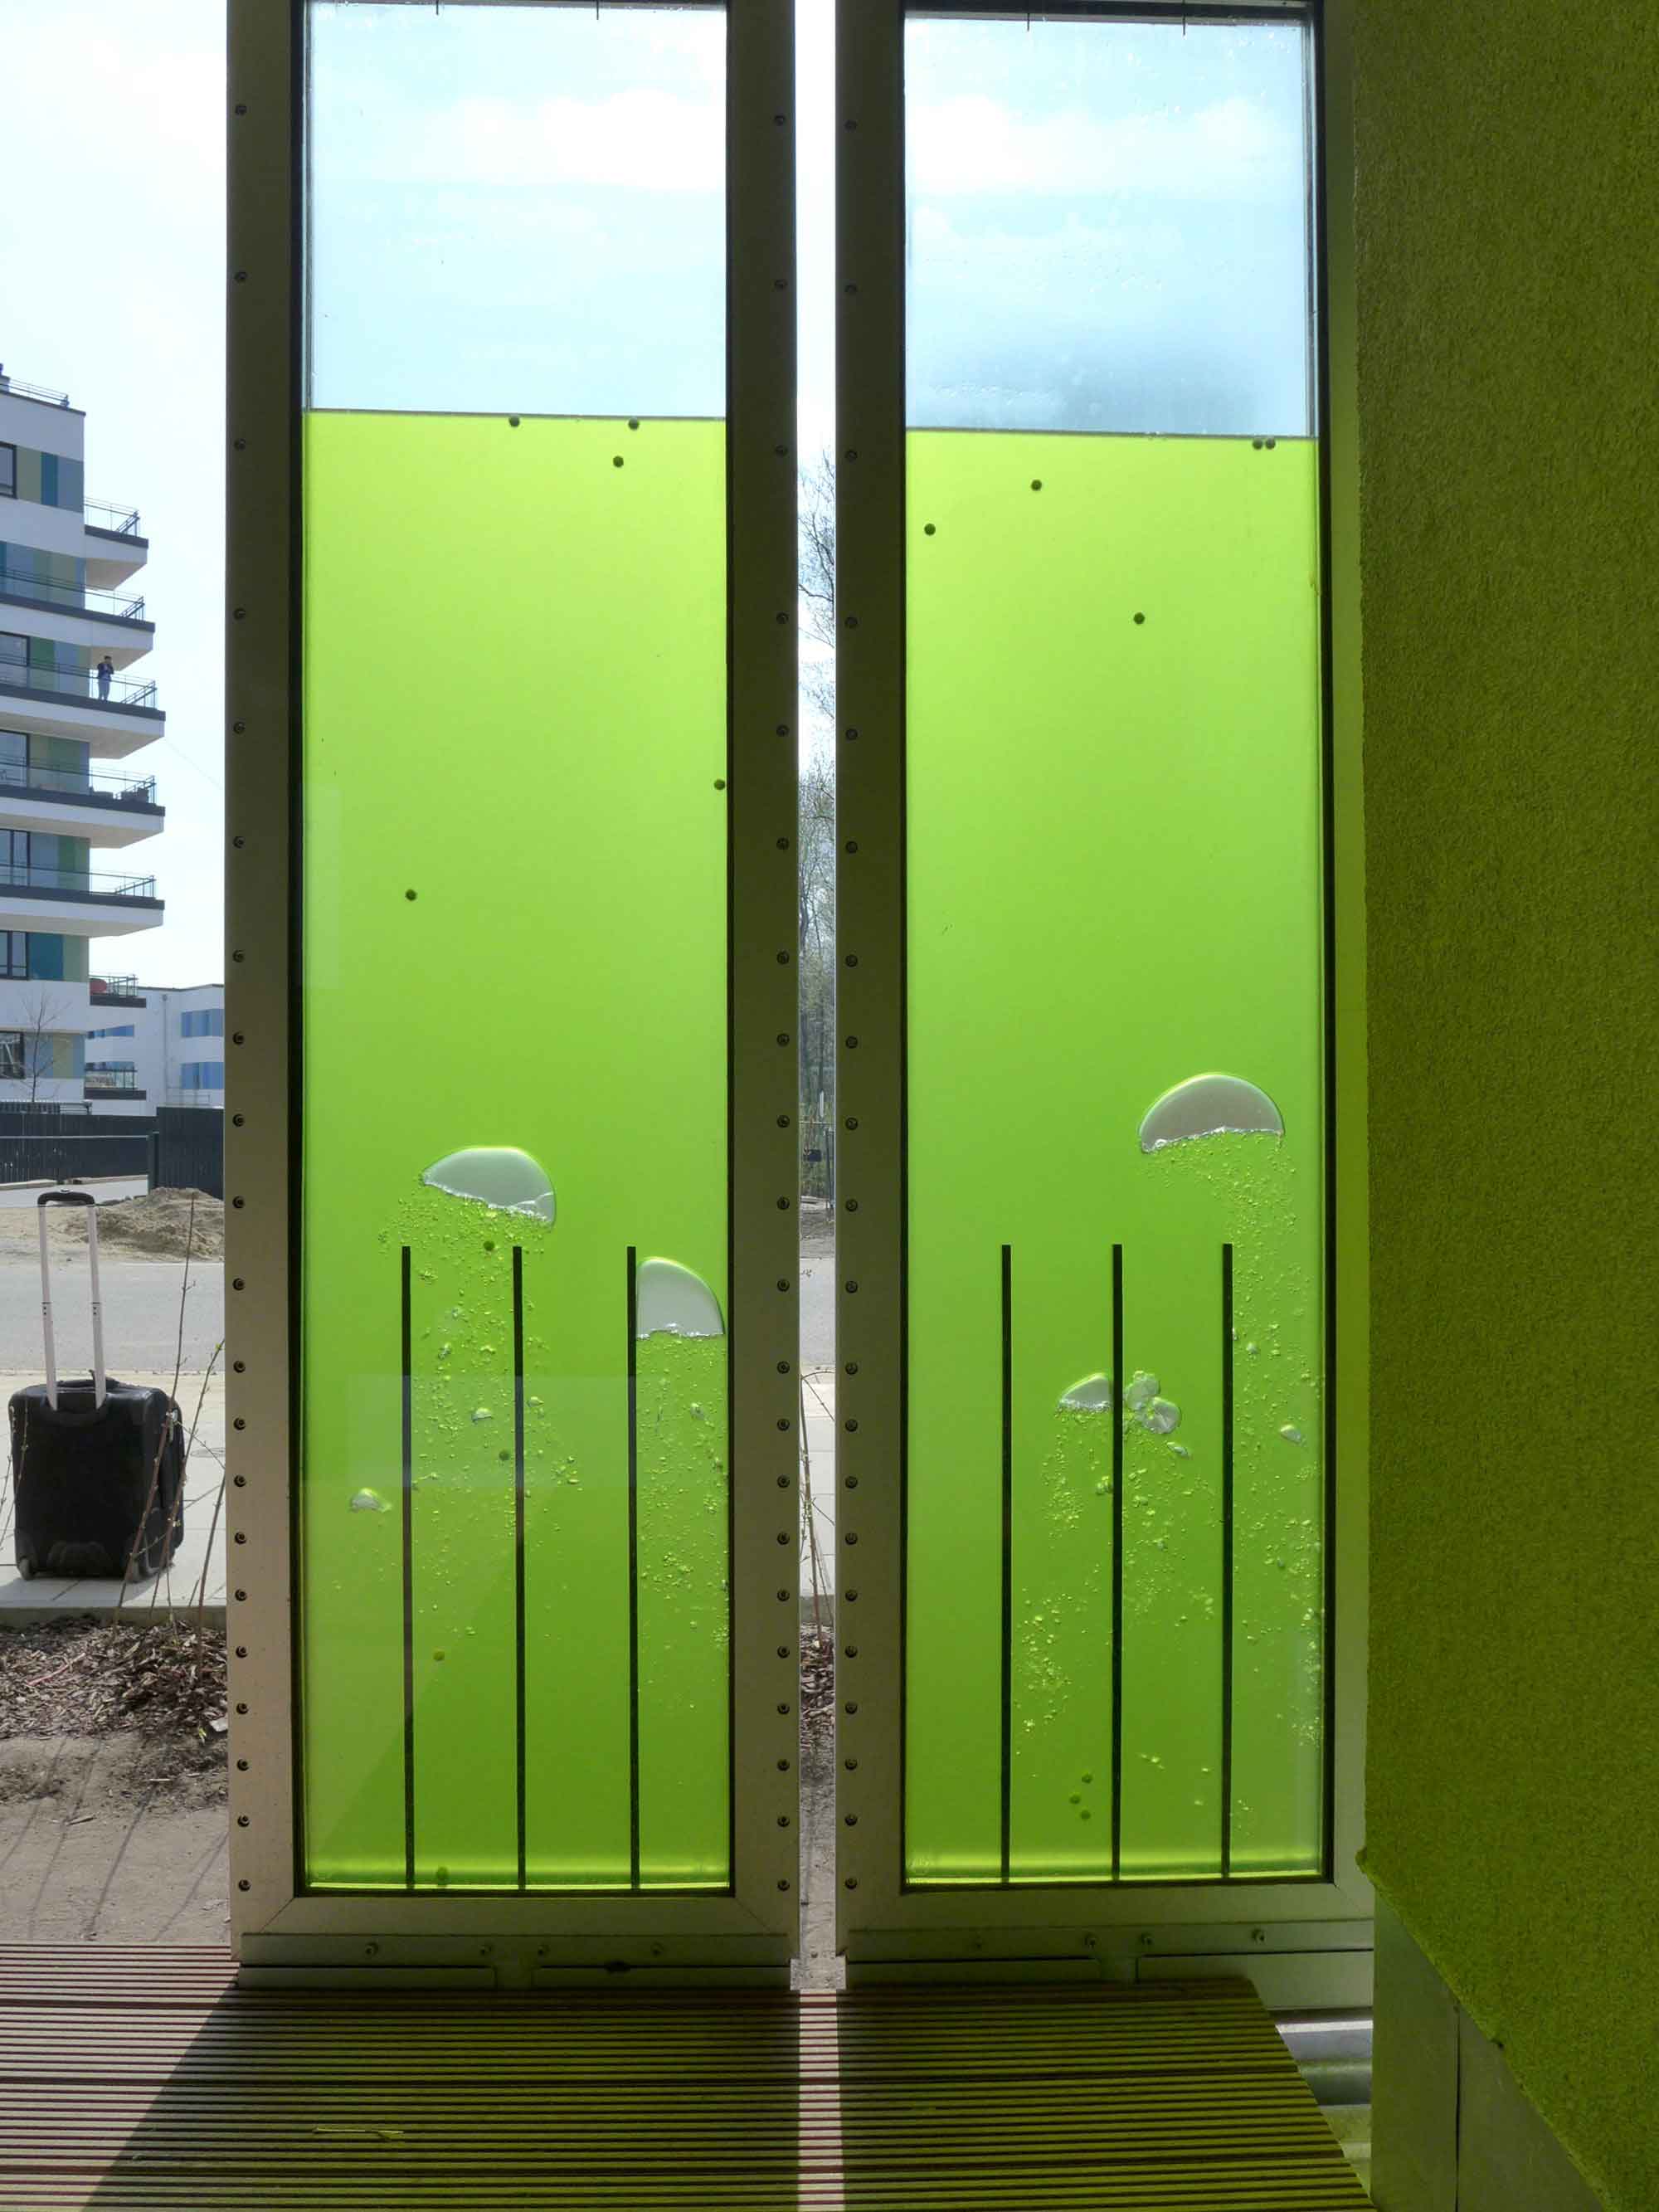 Solar leaf facade showing algae bio reactor panel